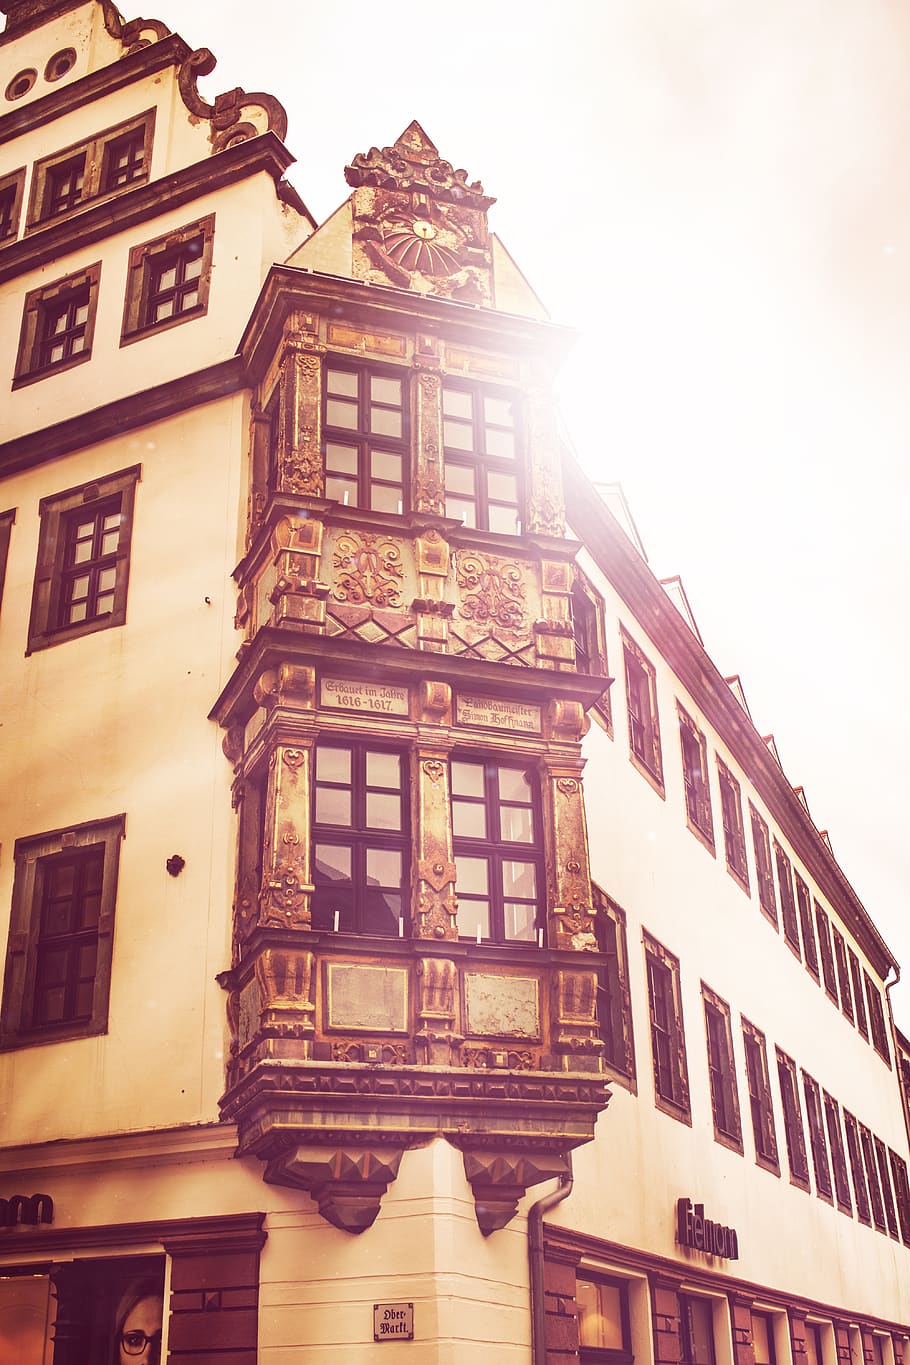 freiberg, bay window, silver, mountain town, historically, saxony